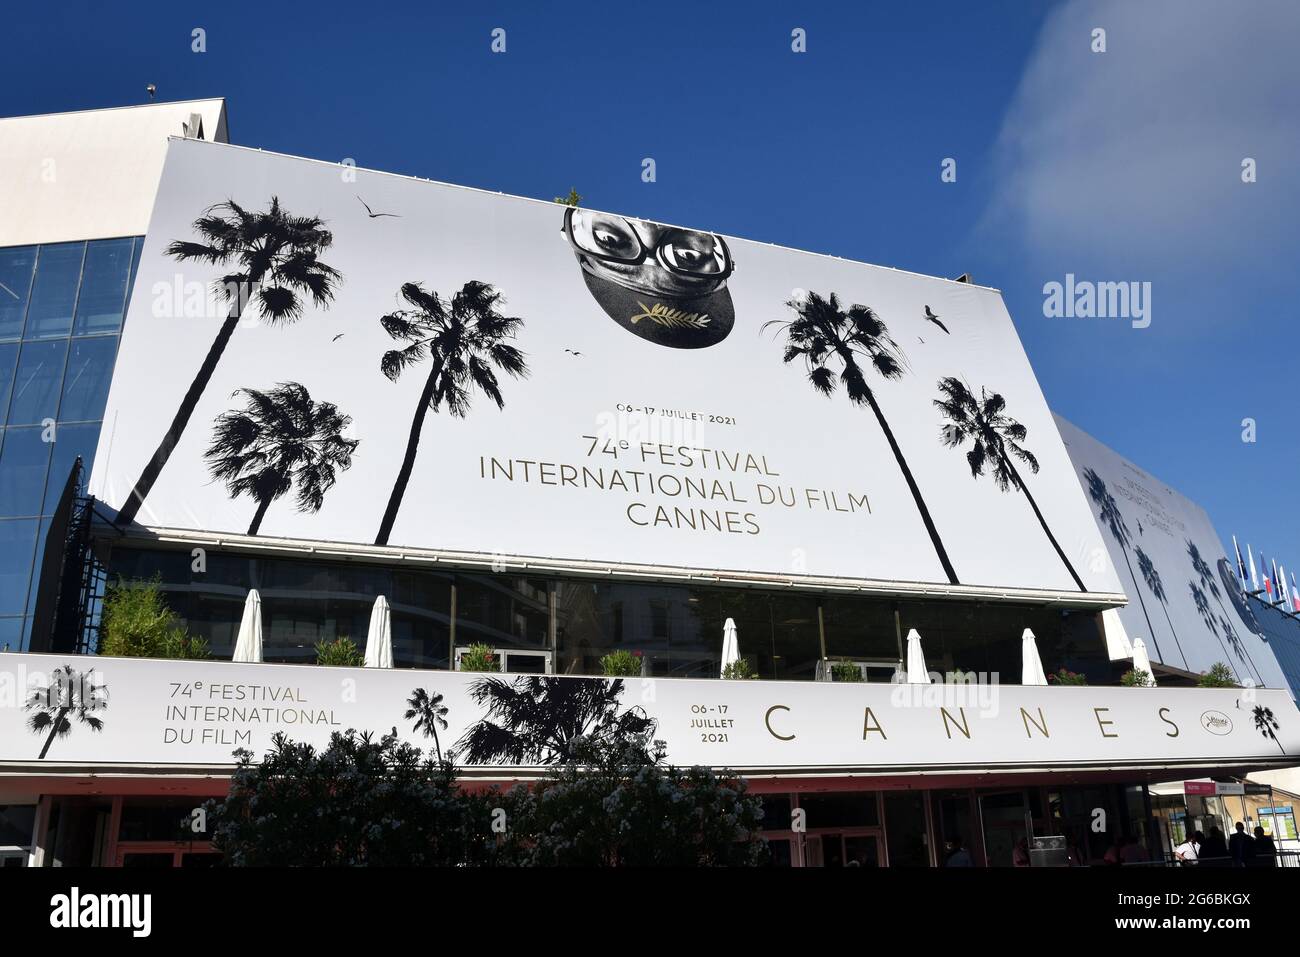 France, Cannes, l'affiche officielle du 74e Festival International du film sur le Palais du Festival. L'artiste choisi cette année est Spike Lee. Banque D'Images